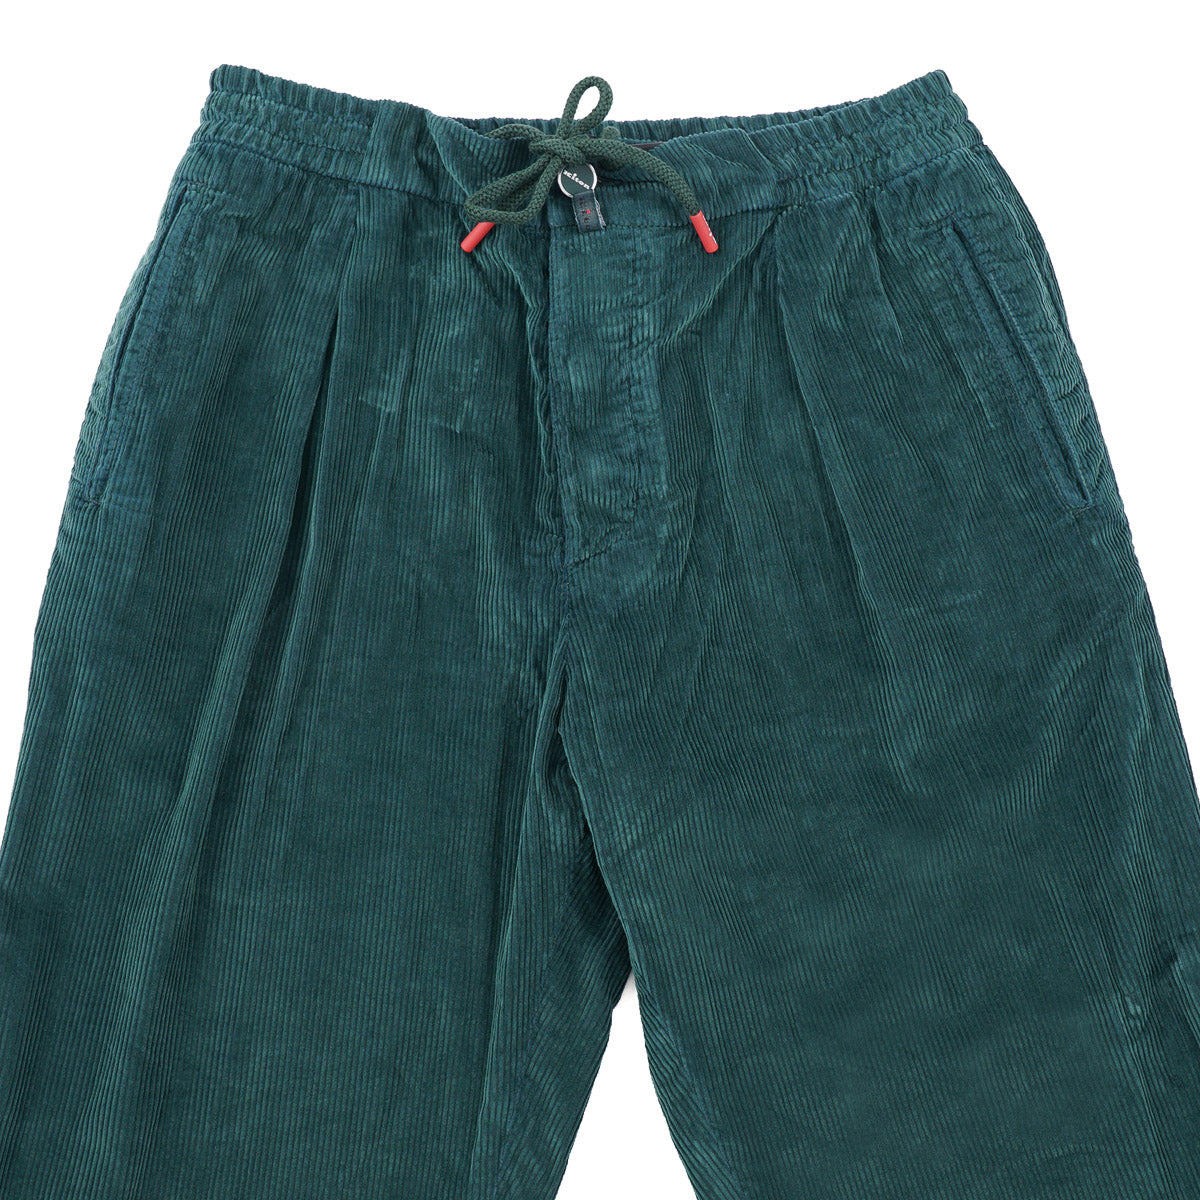 Kiton Corduroy Cotton Jogger Pants - Top Shelf Apparel